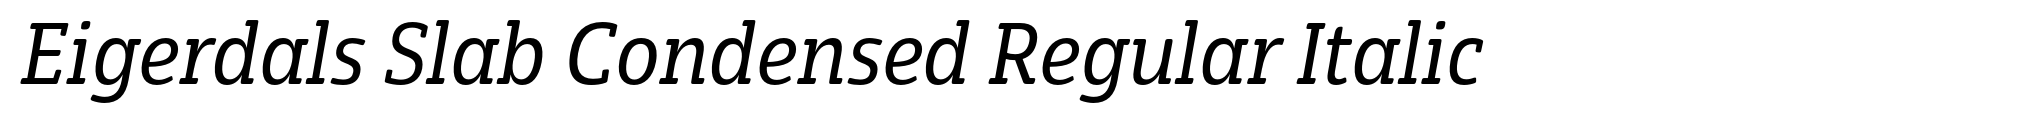 Eigerdals Slab Condensed Regular Italic image